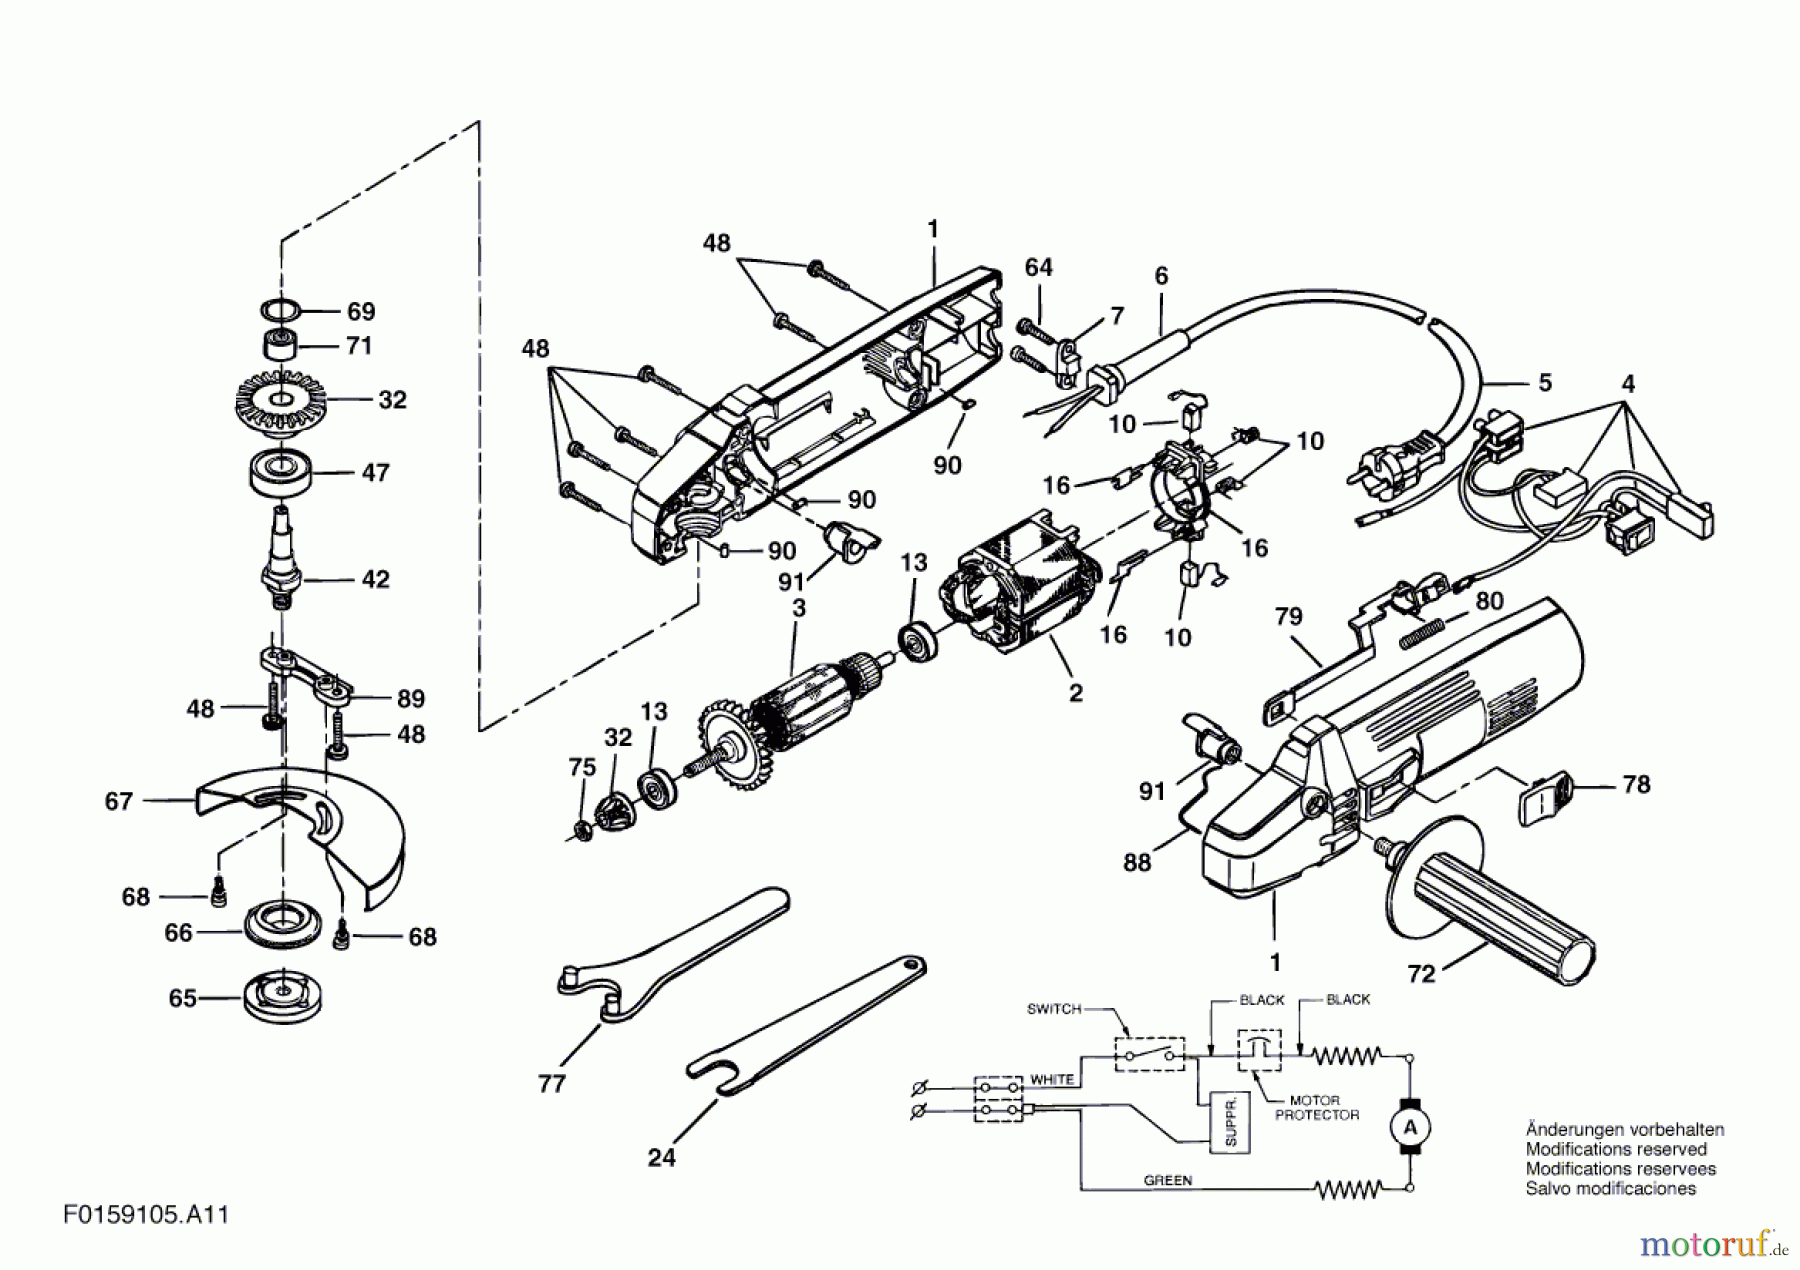  Bosch Werkzeug Hw-Winkelschleifer 9105 H1 Seite 1